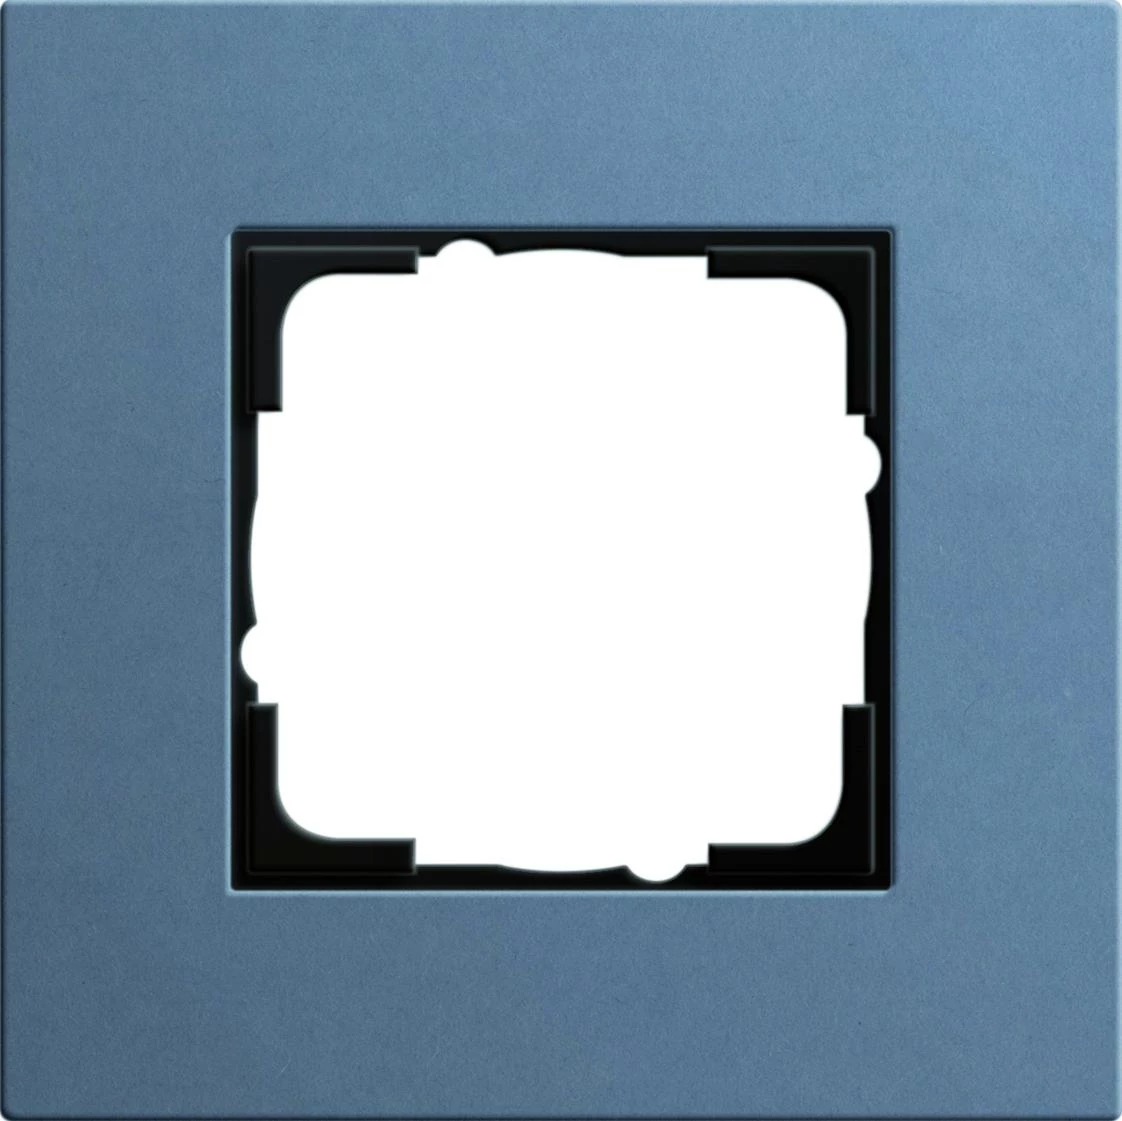  артикул 0211227 название Рамка 1-ая (одинарная), Синий, серия Esprit